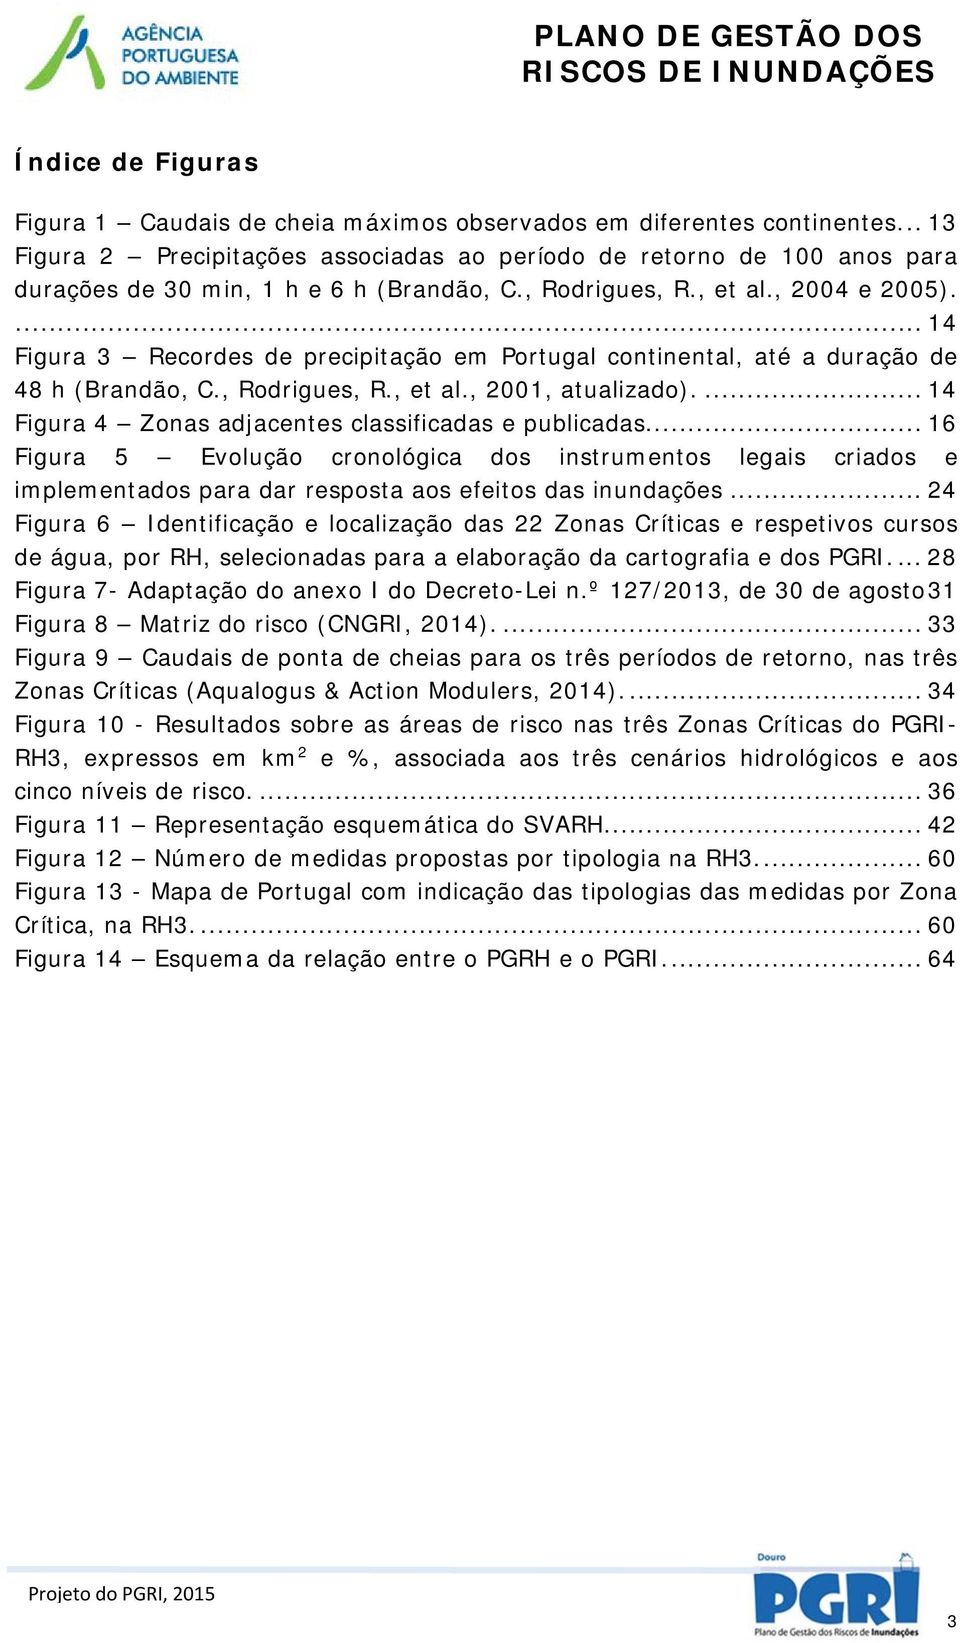 ... 14 Figura 3 Recordes de precipitação em Portugal continental, até a duração de 48 h (Brandão, C., Rodrigues, R., et al., 2001, atualizado).... 14 Figura 4 Zonas adjacentes classificadas e publicadas.